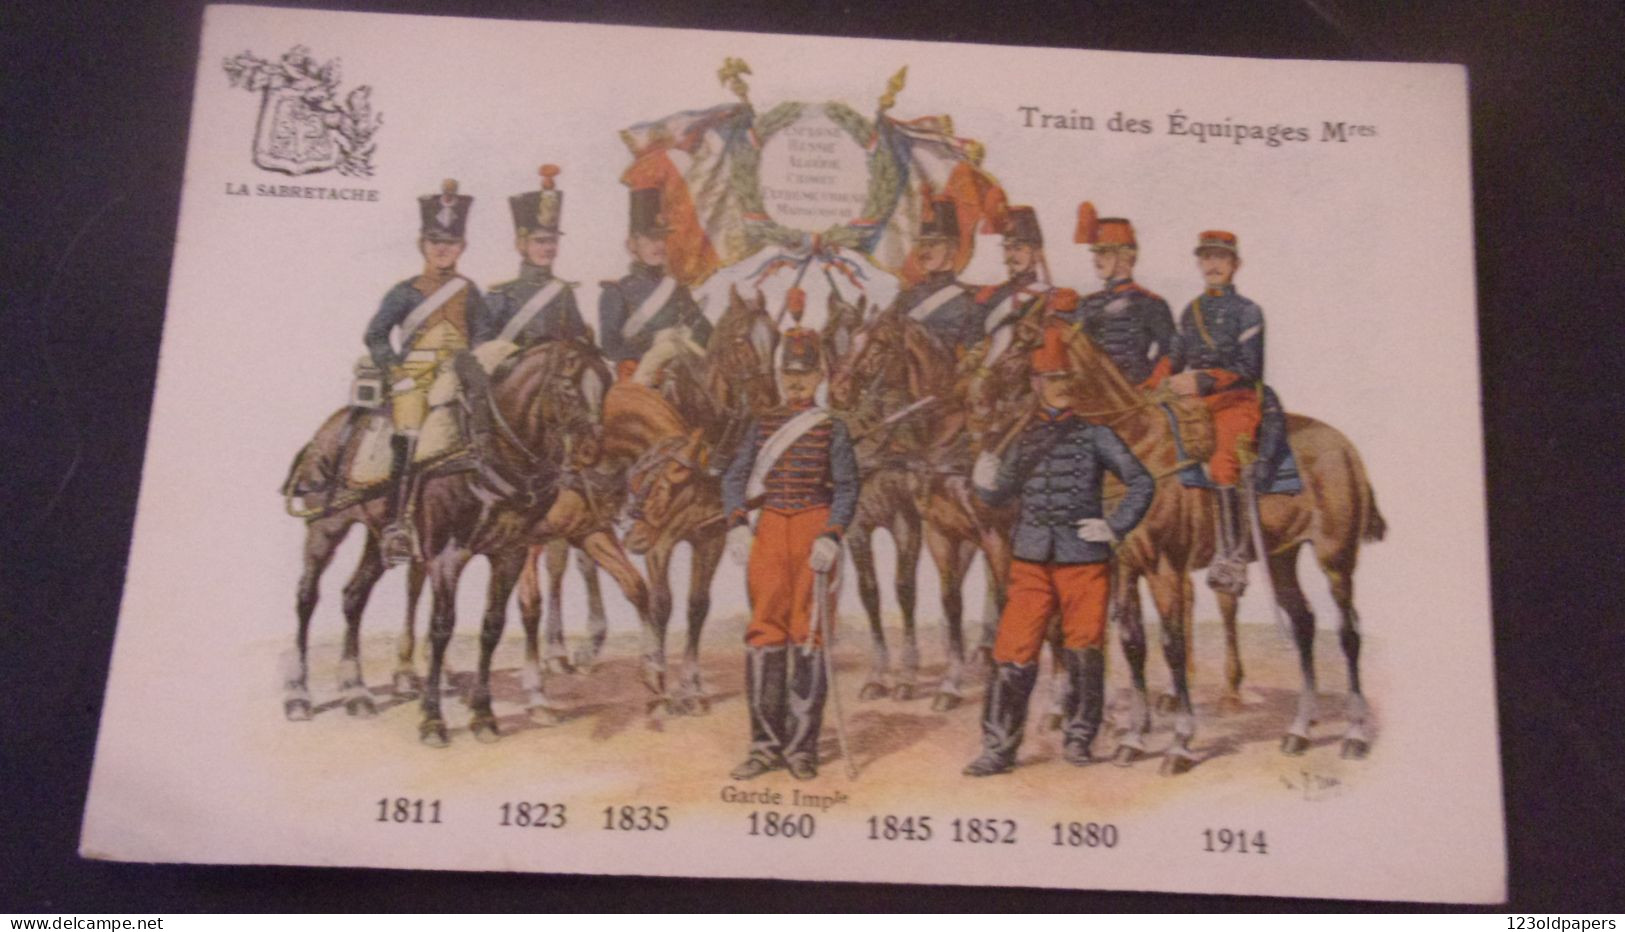 SABRETACHE  UNIFORME TENUE MILITAIRE TRAIN DES EQUIPAGES 1811 1914 - Regimente